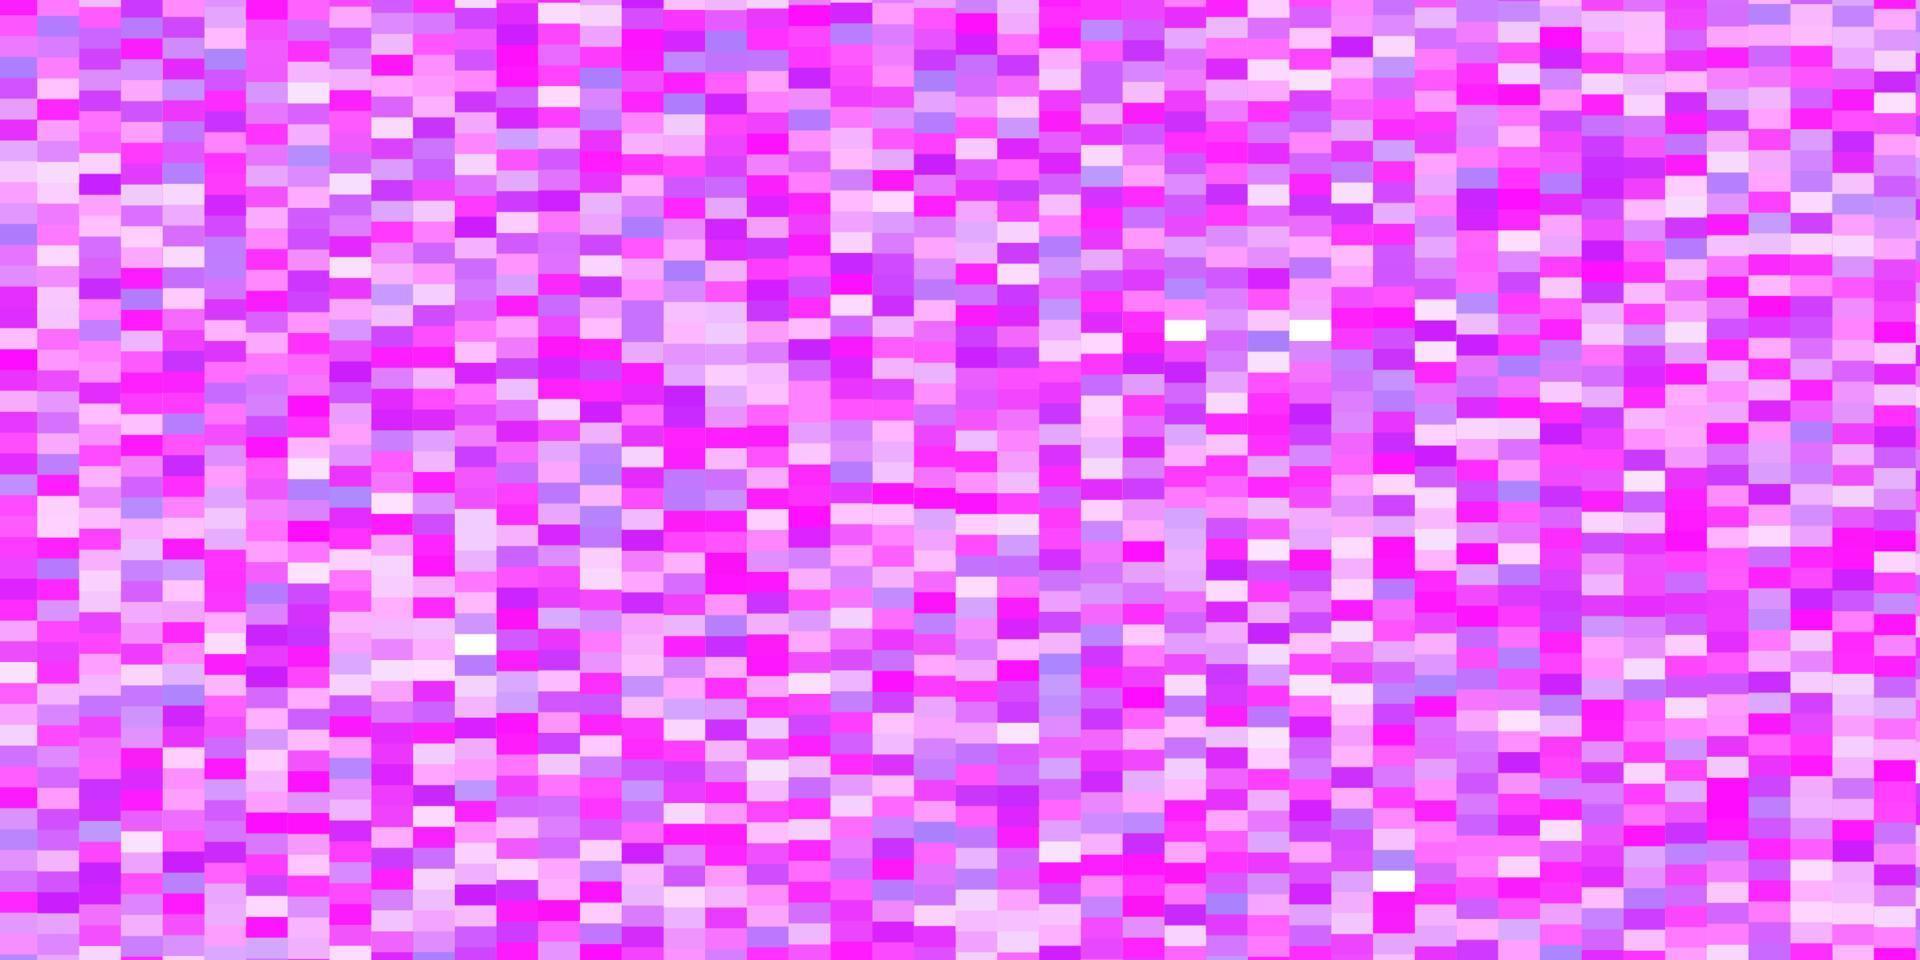 modello vettoriale viola chiaro, rosa in rettangoli.